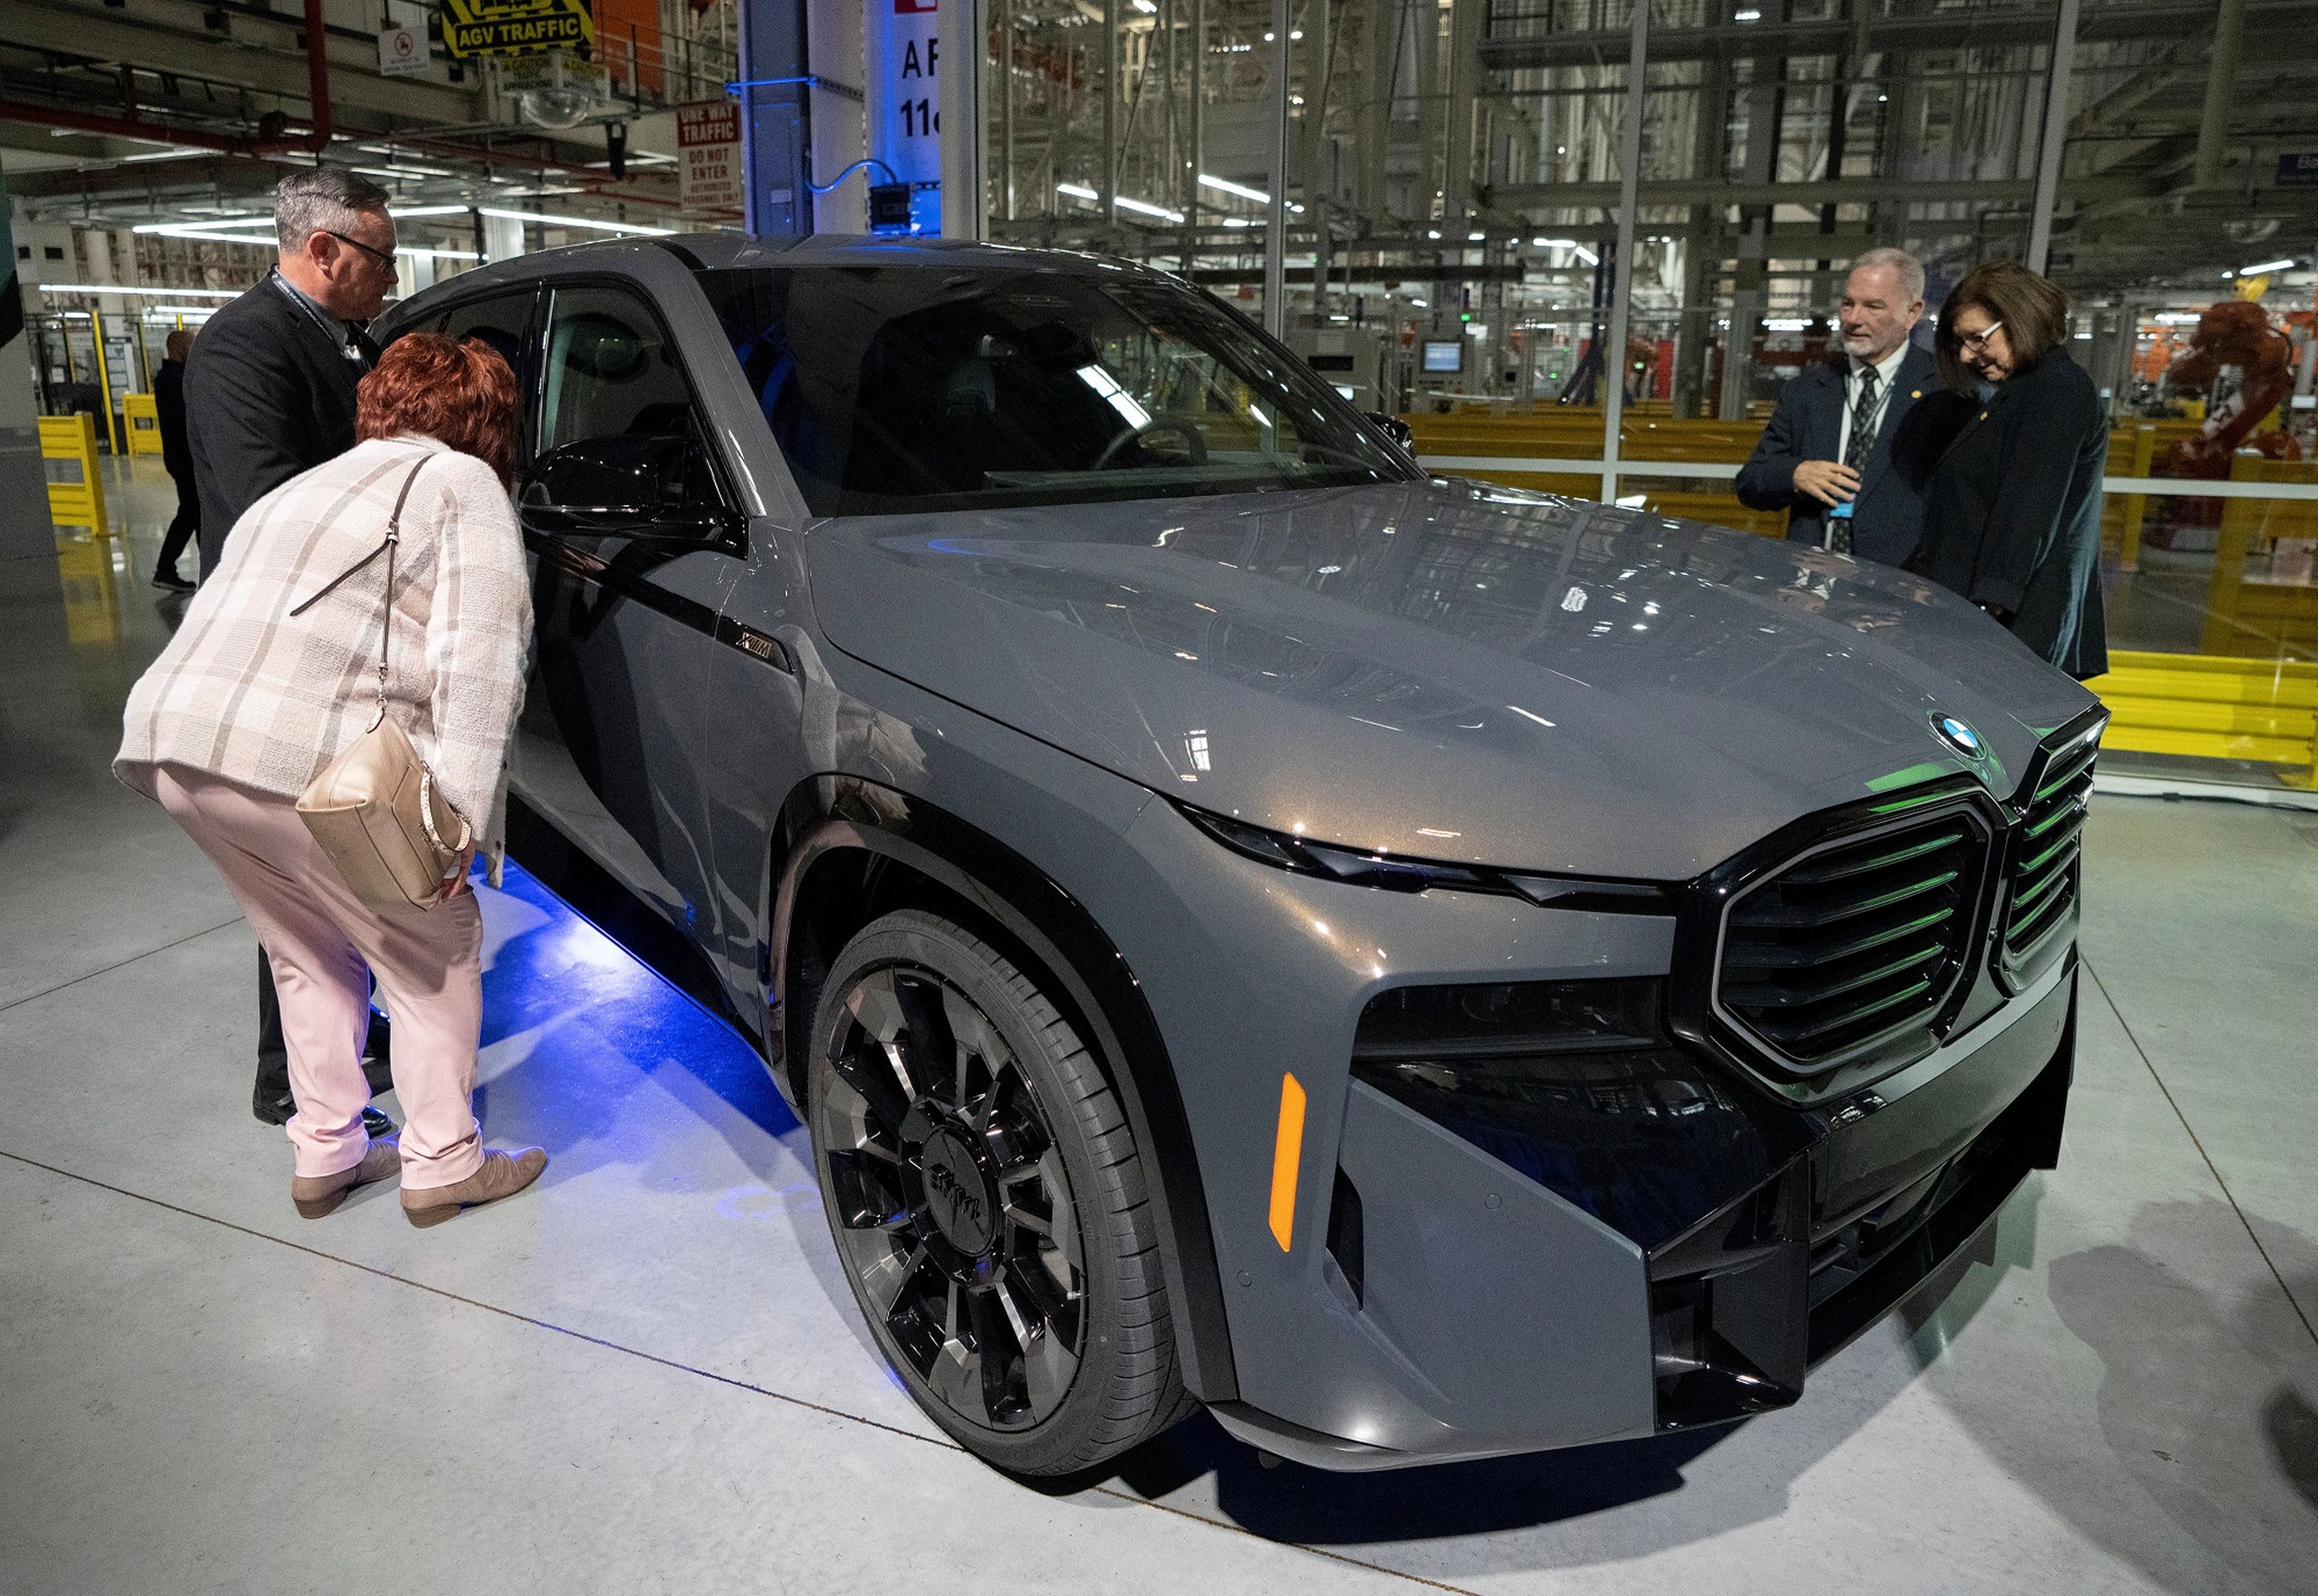 Visitantes observan el nuevo BMW XM híbrido-eléctrico en la planta de fabricación de BMW en Carolina del Sur.